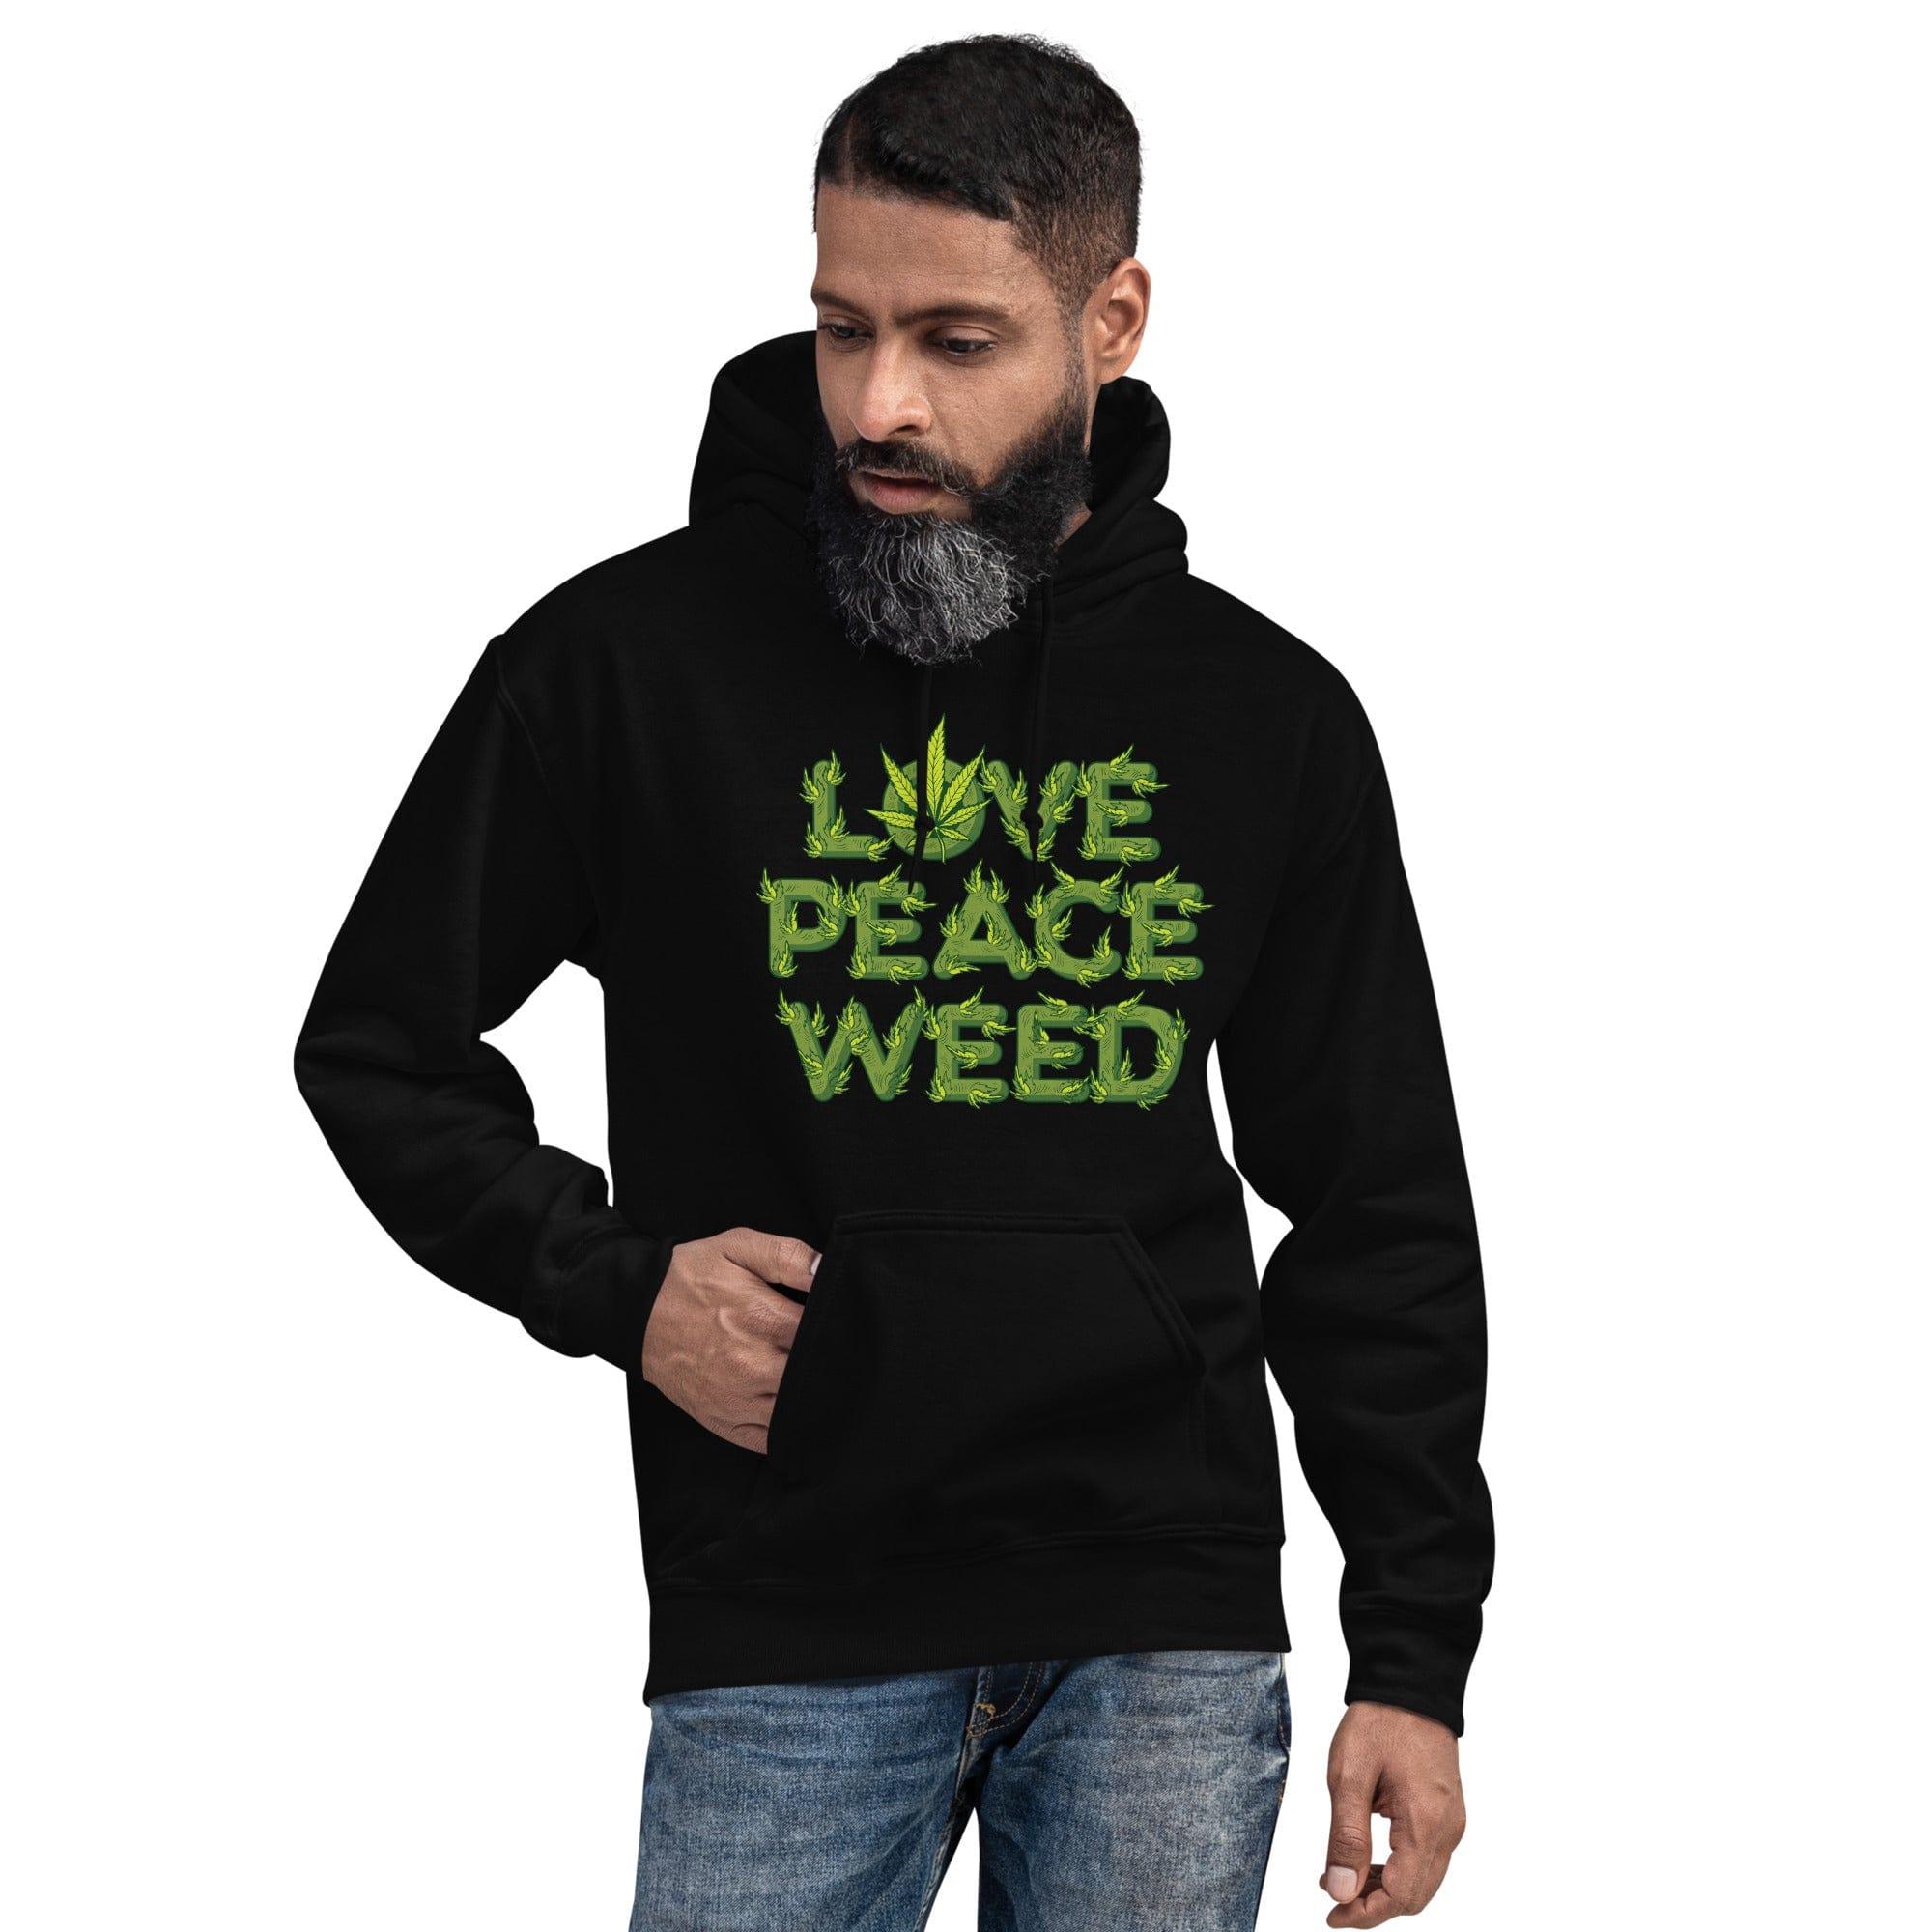 Marijuana Hoodie Love Peace and Weed in Marijuana Leaves Unisex Pullover - TopKoalaTee